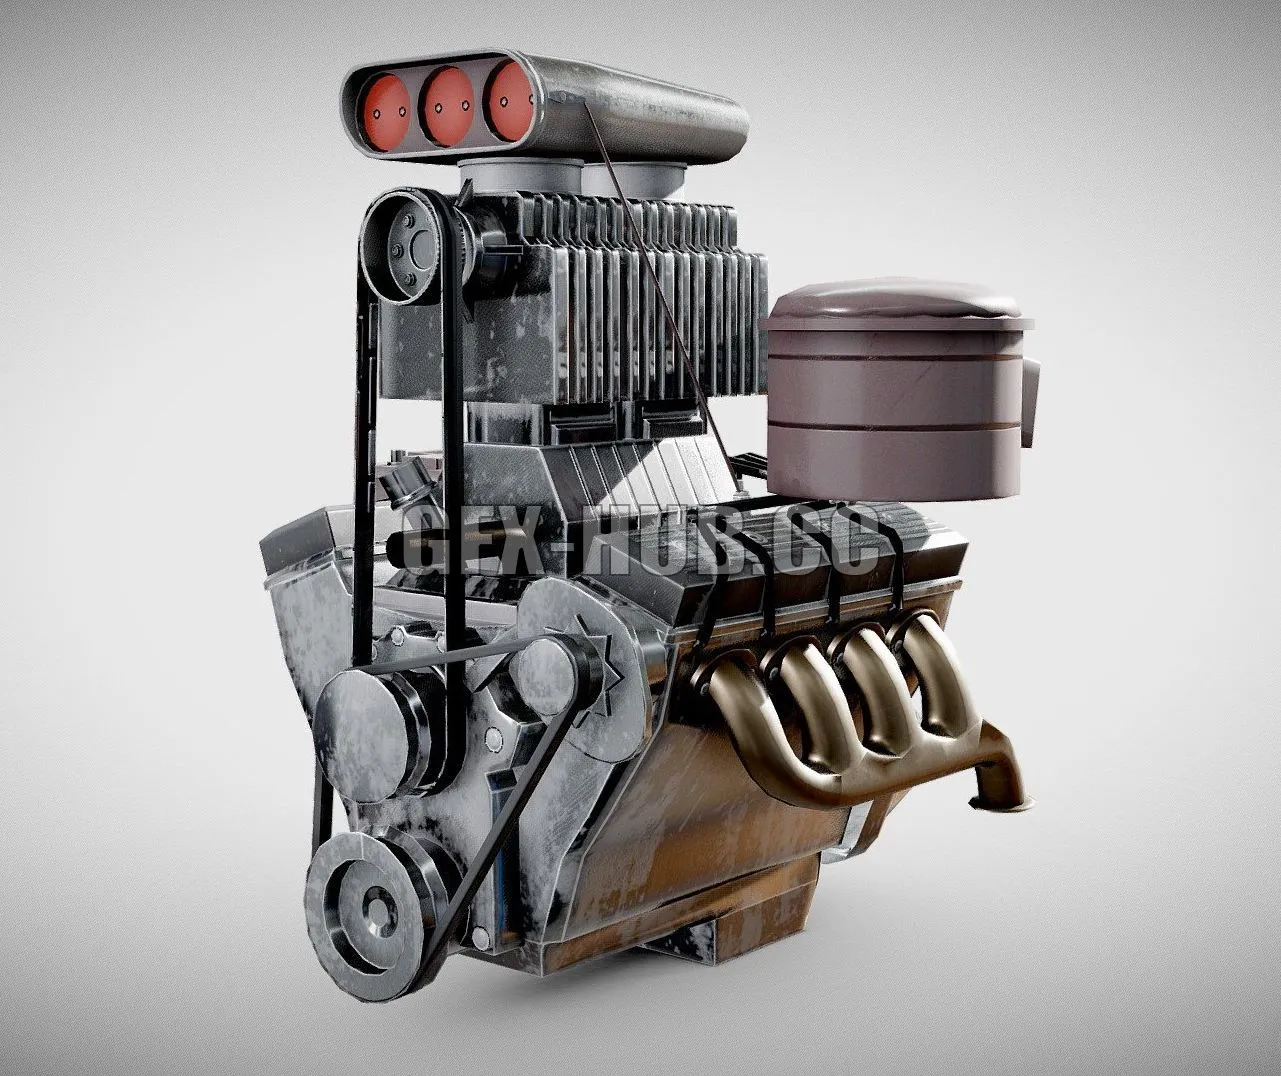 PBR Game 3D Model – Vintage car engine V8 turbocharged vehicle